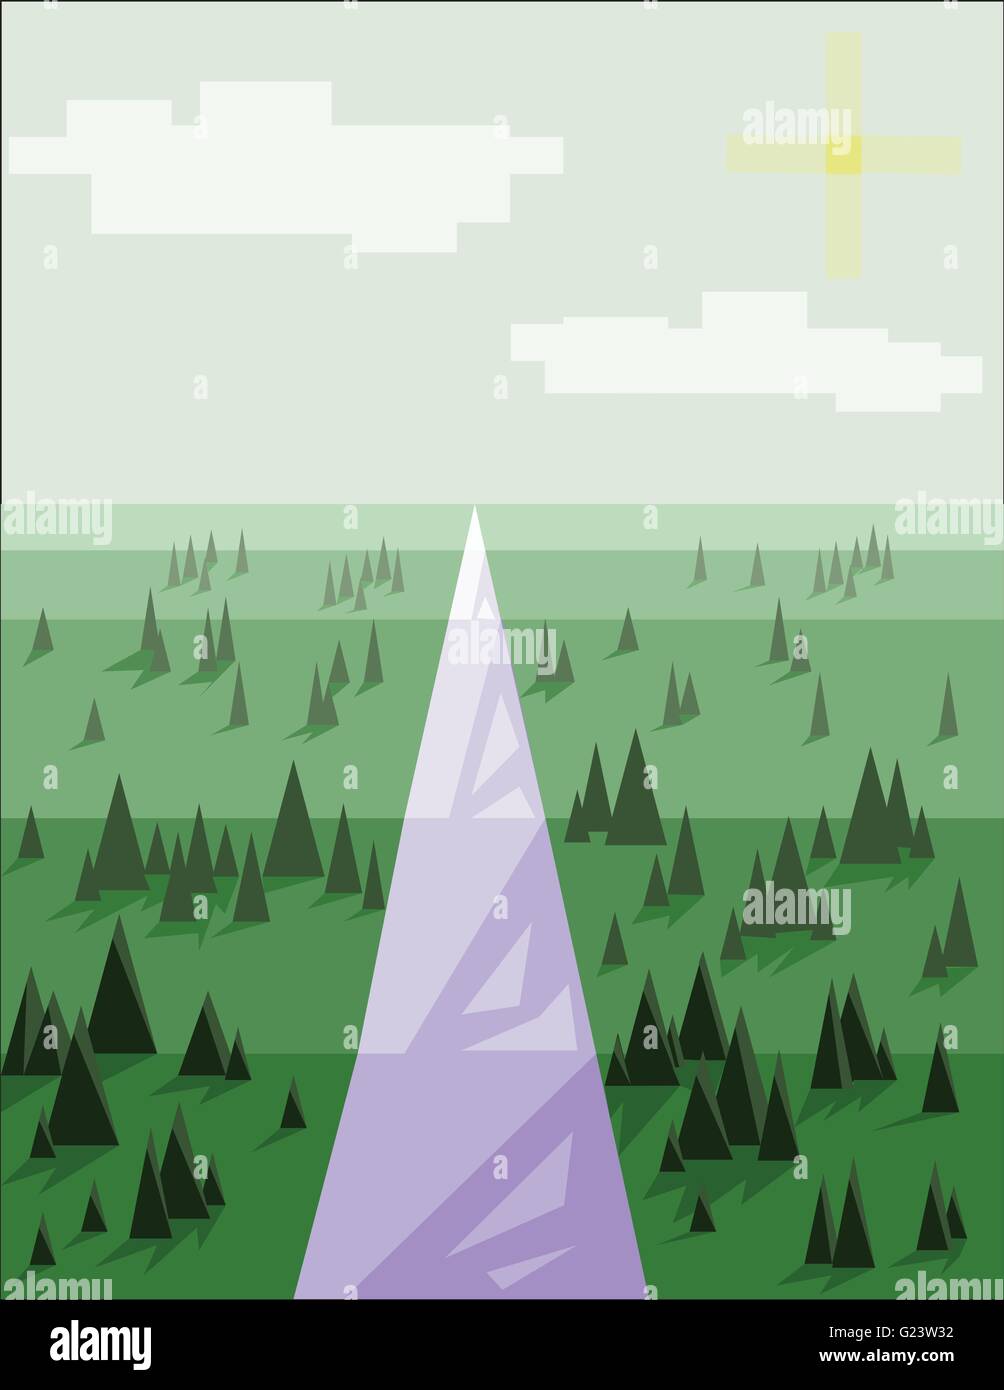 Paesaggio Astratto con alberi di pino, neve e sole e viola road, su uno sfondo verde chiaro. Vettore digitale dell'immagine. Illustrazione Vettoriale